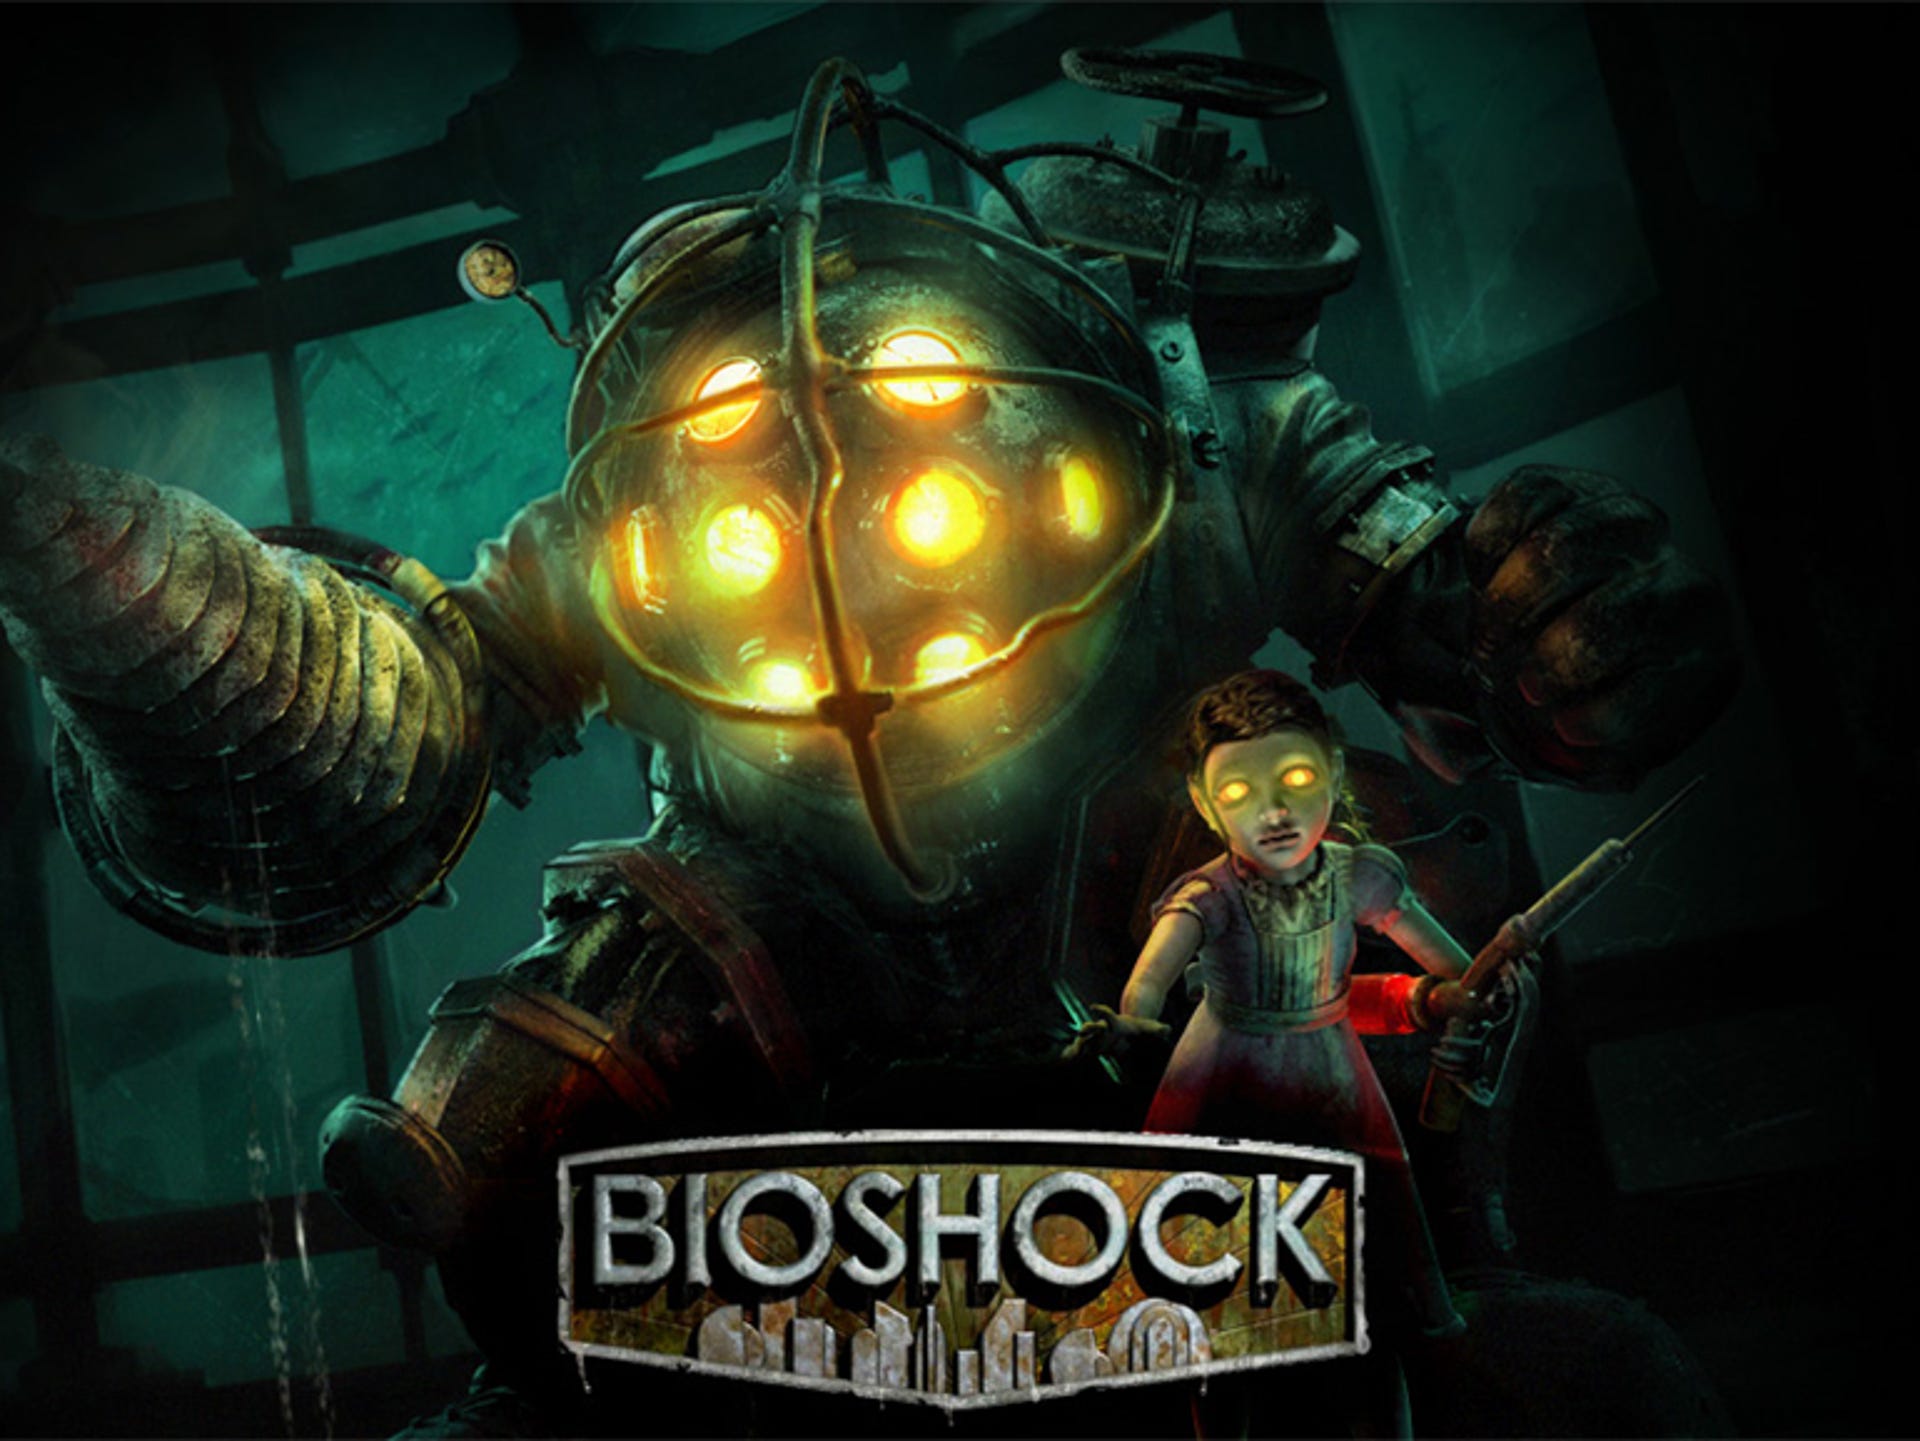 BioShock The Collection [ Bioshock + Bioshock 2 + Bioshock Infinite ] (PS4)  NEW